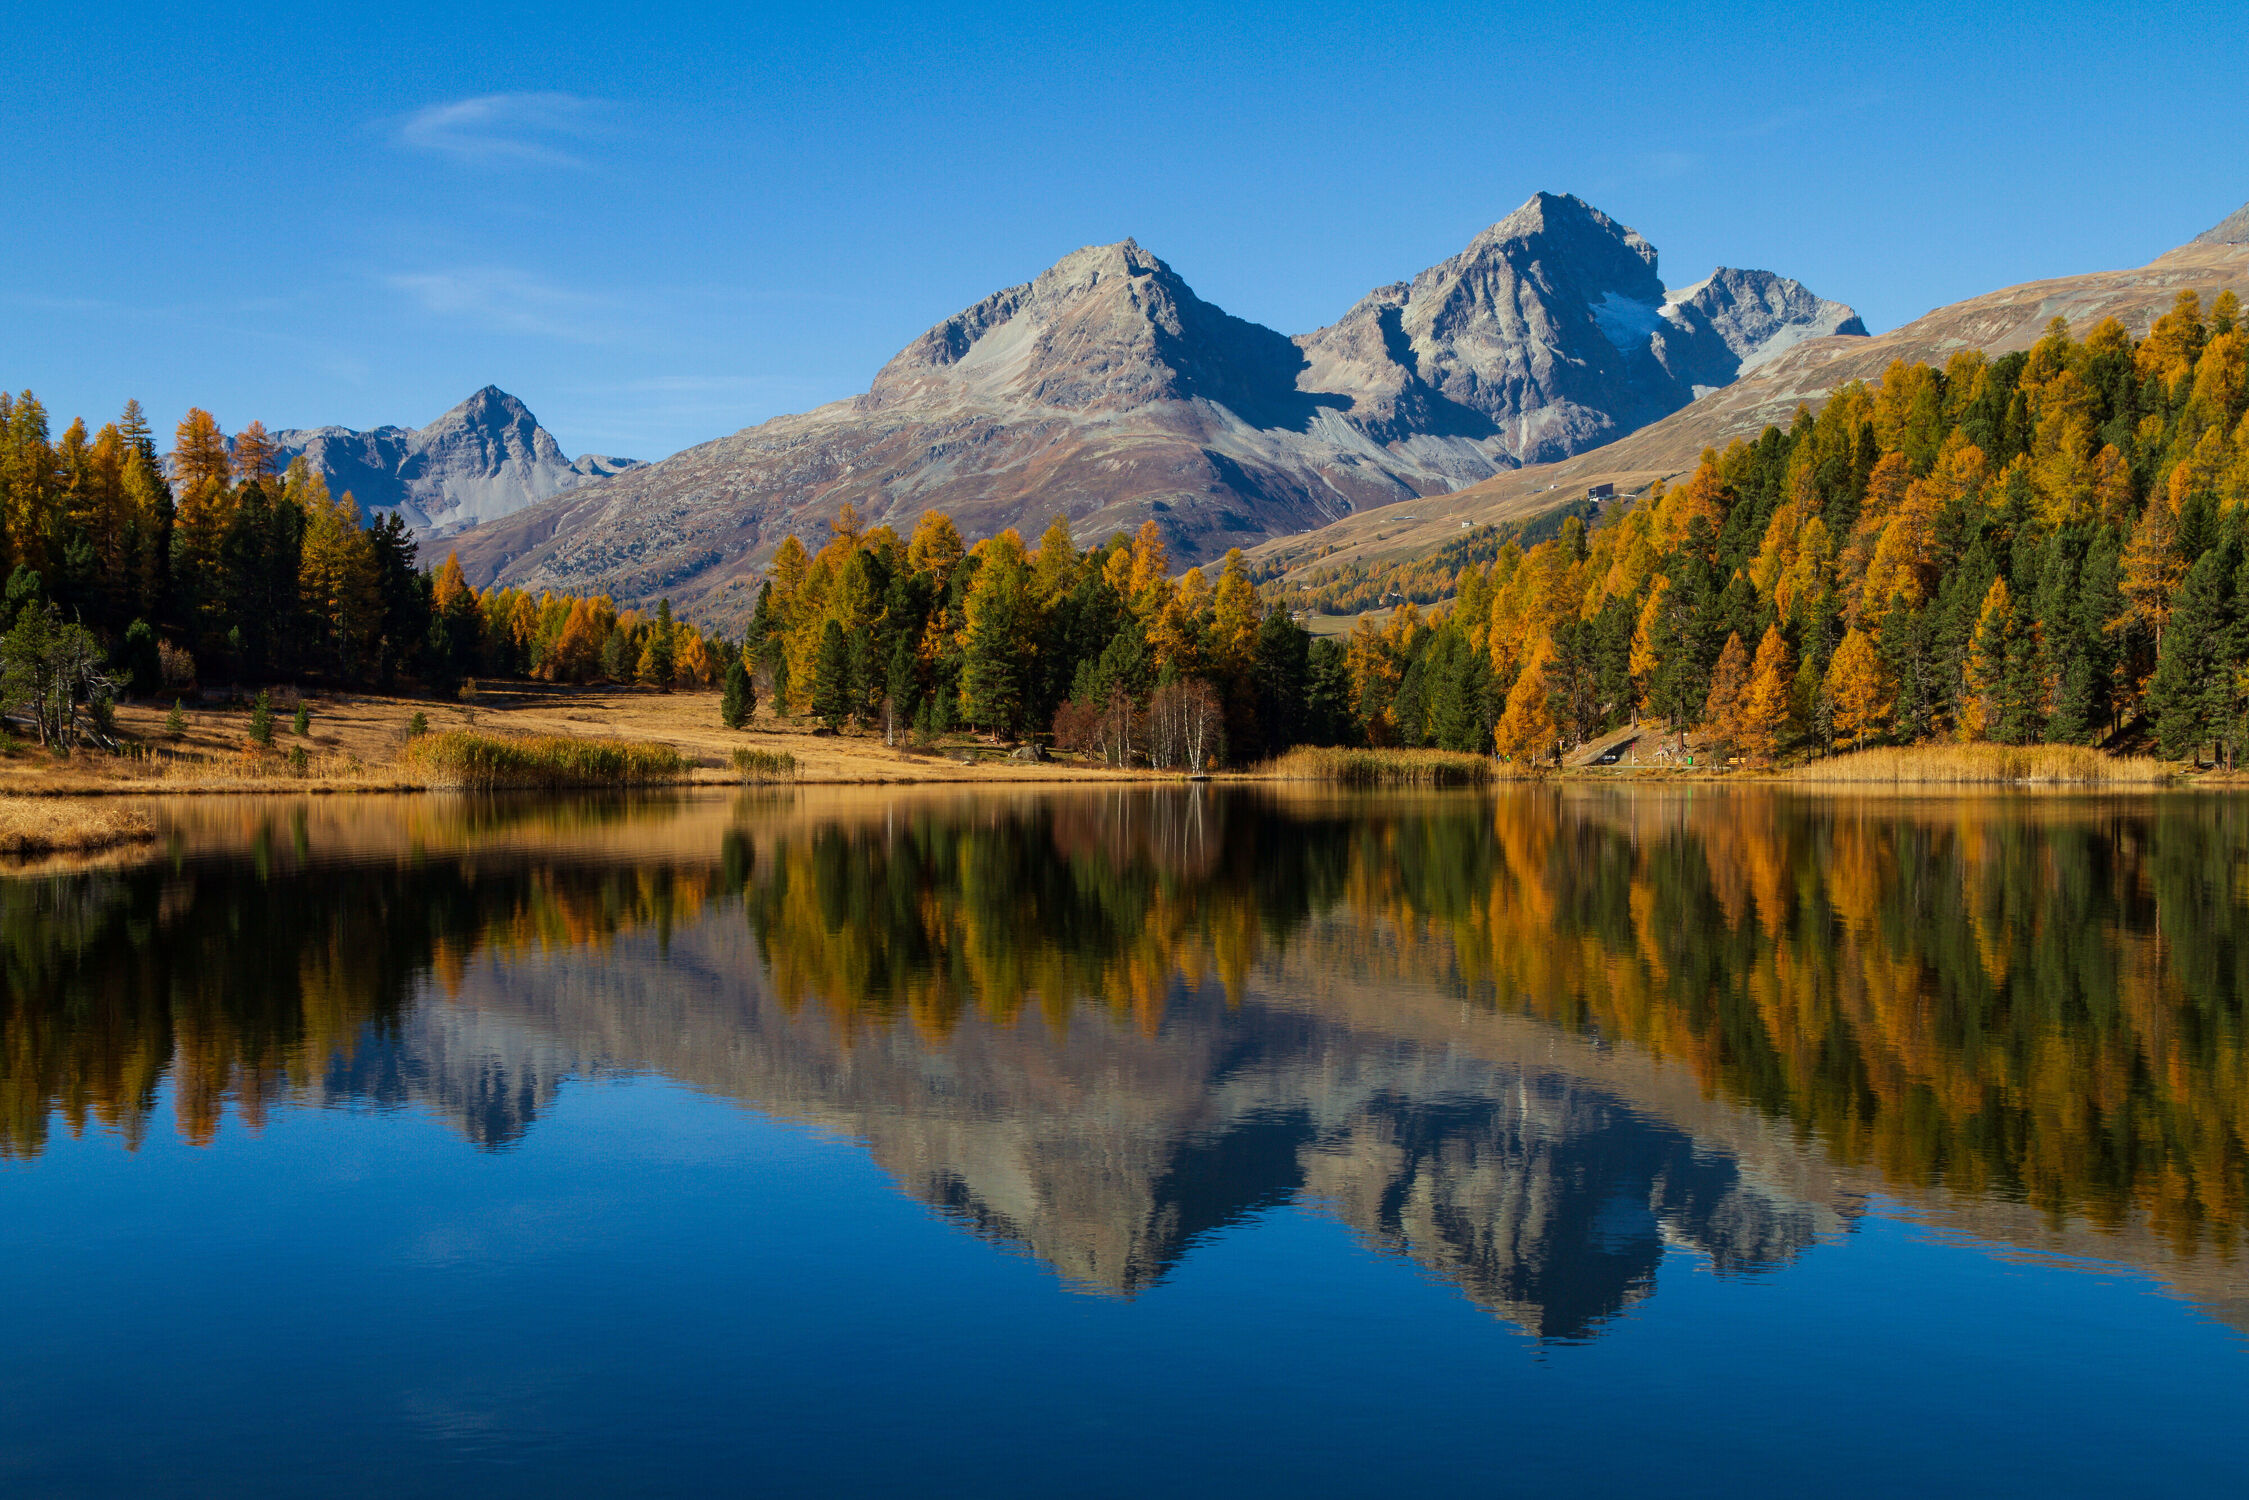 Bild mit Berge, Lärchen, Blau, Panorama, Bergsee, Spiegelung, Reflektionen im Wasser, Bergpanorama, Herbstfärbung